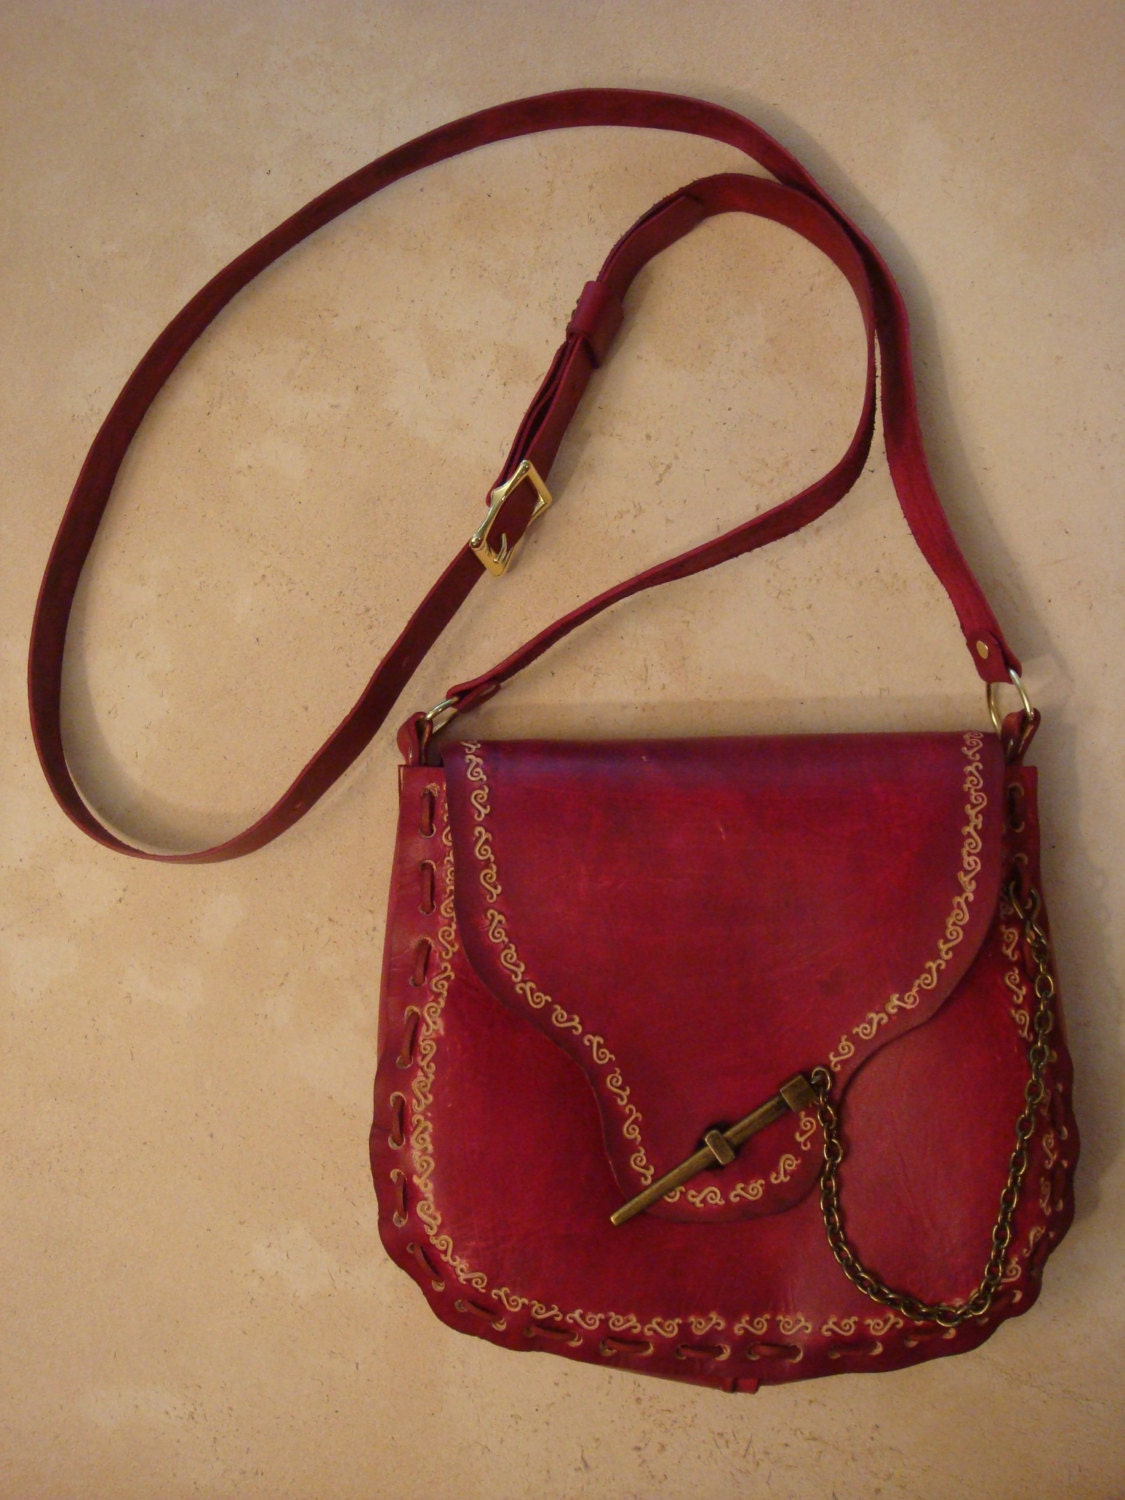 Kim Tooled Red Leather Crossbody Bag Shoulder Bag Purse